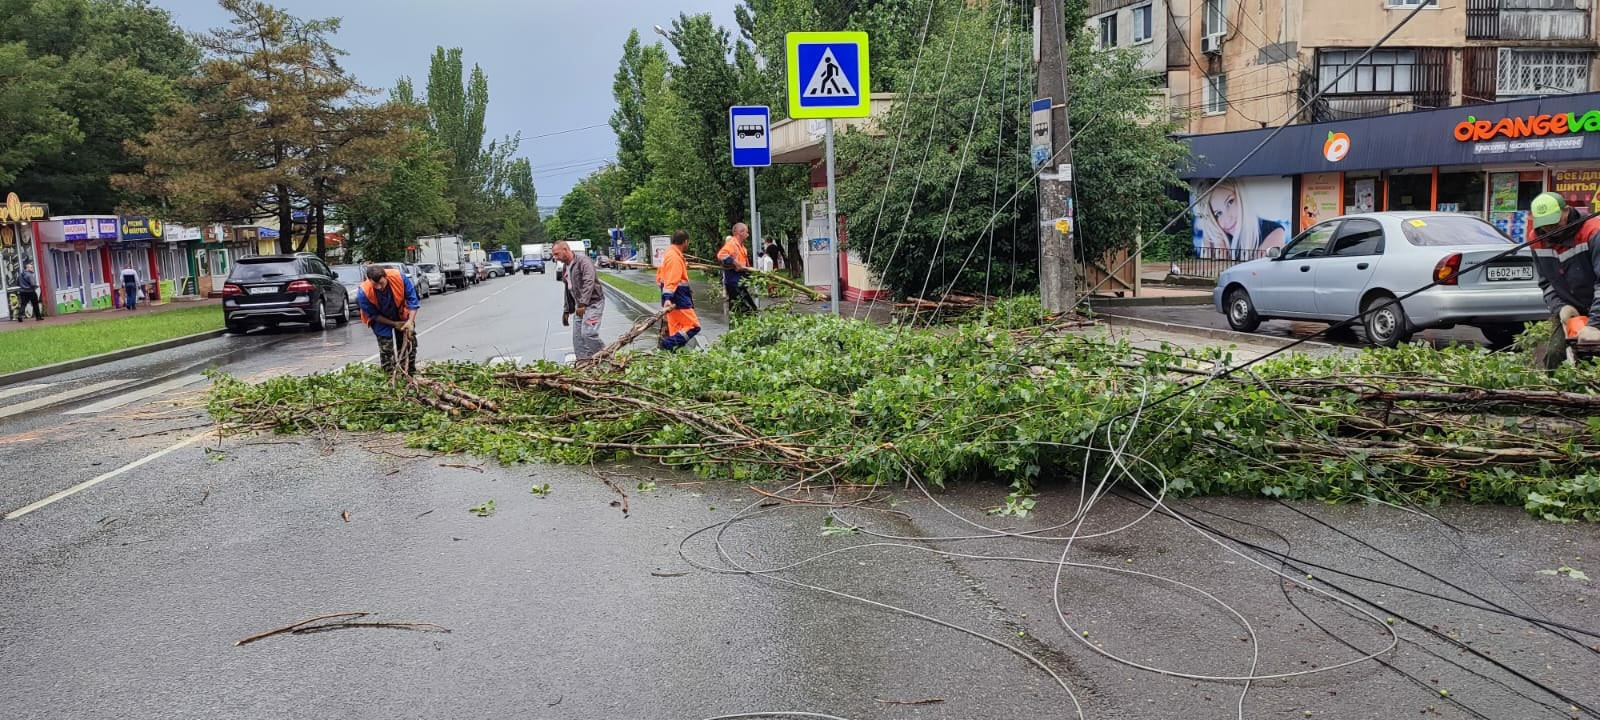 В Симферополе осадки и шквалистый ветер повалили деревья. Фото © VK / Администрация города Симферополя